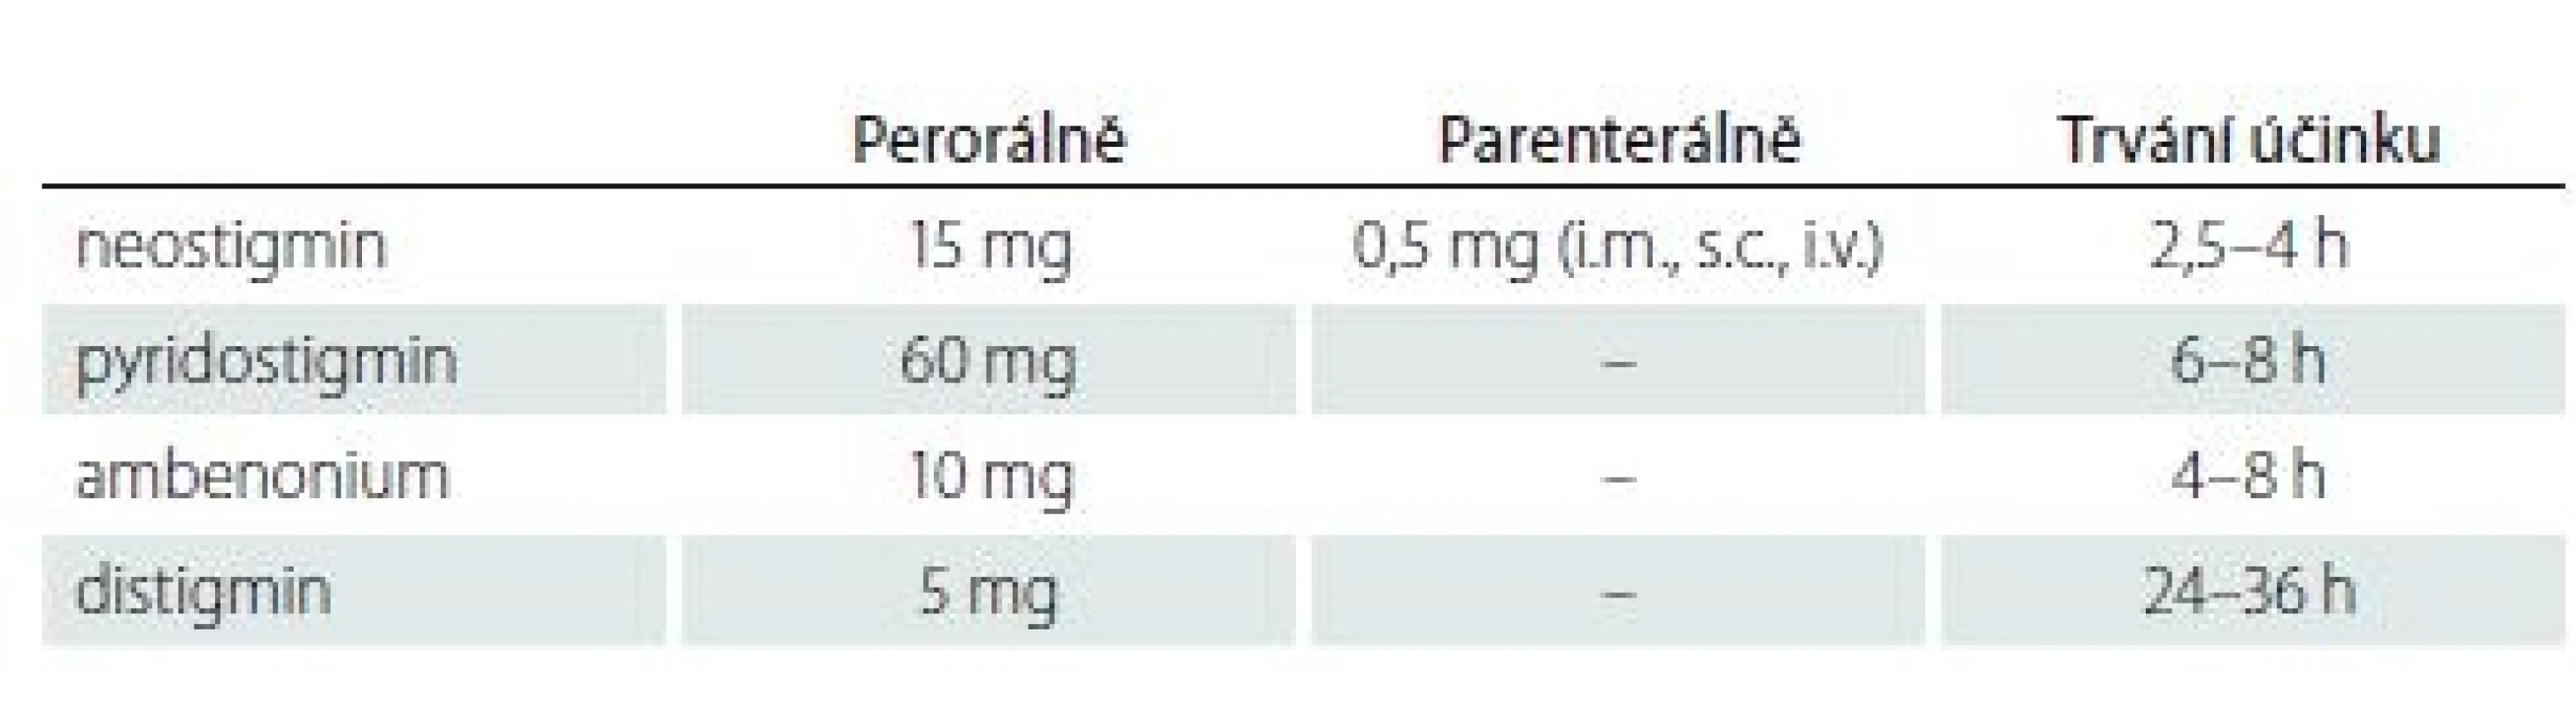 Inhibitory acetylcholinesterázy – dávkování (jednorázová dávka) a trvání
účinku.